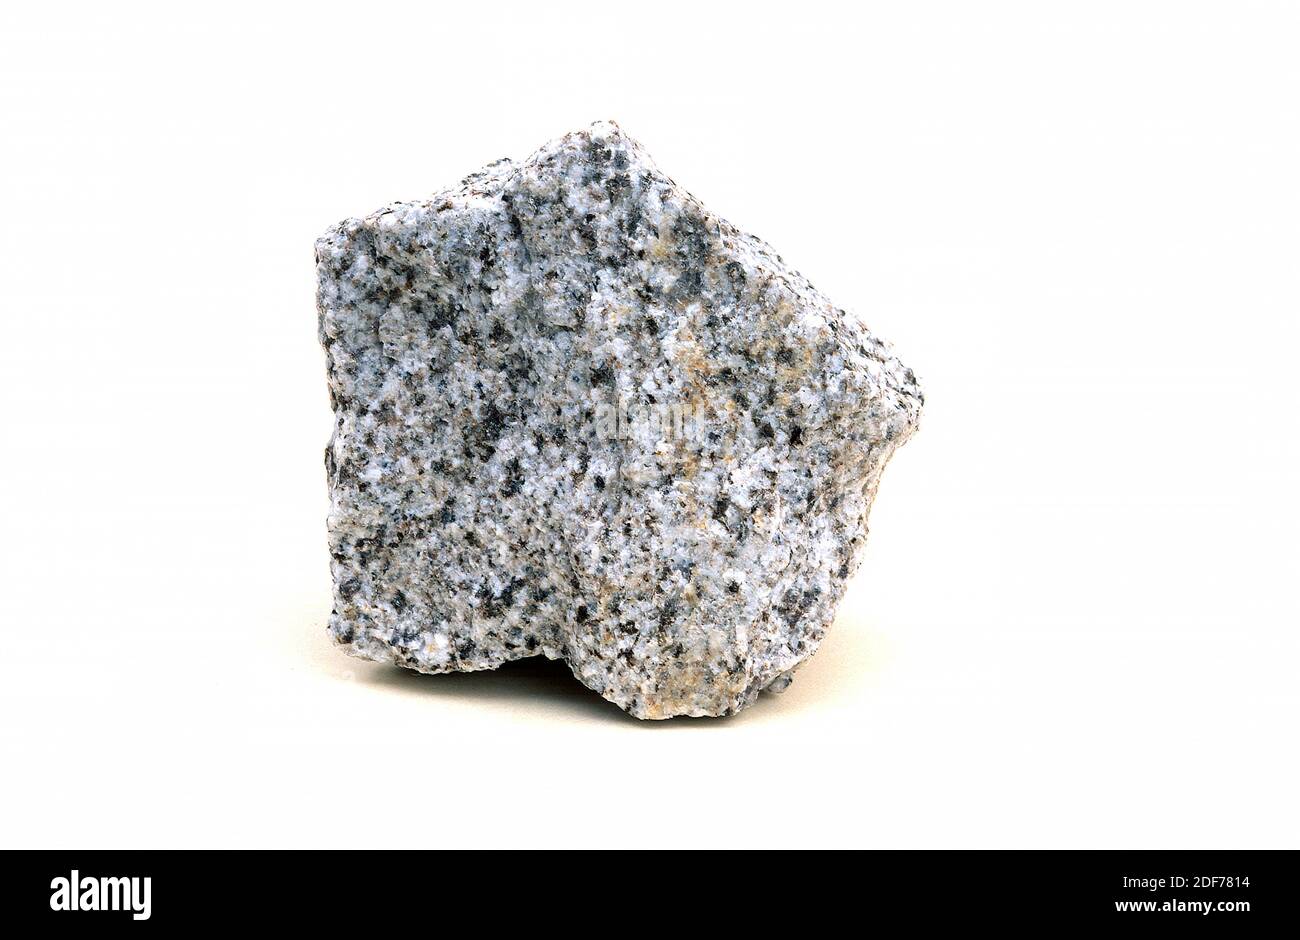 La granodiorite est une roche intrusive ignée semblable au granite mais plus riche en plagioclase. Exemple. Banque D'Images